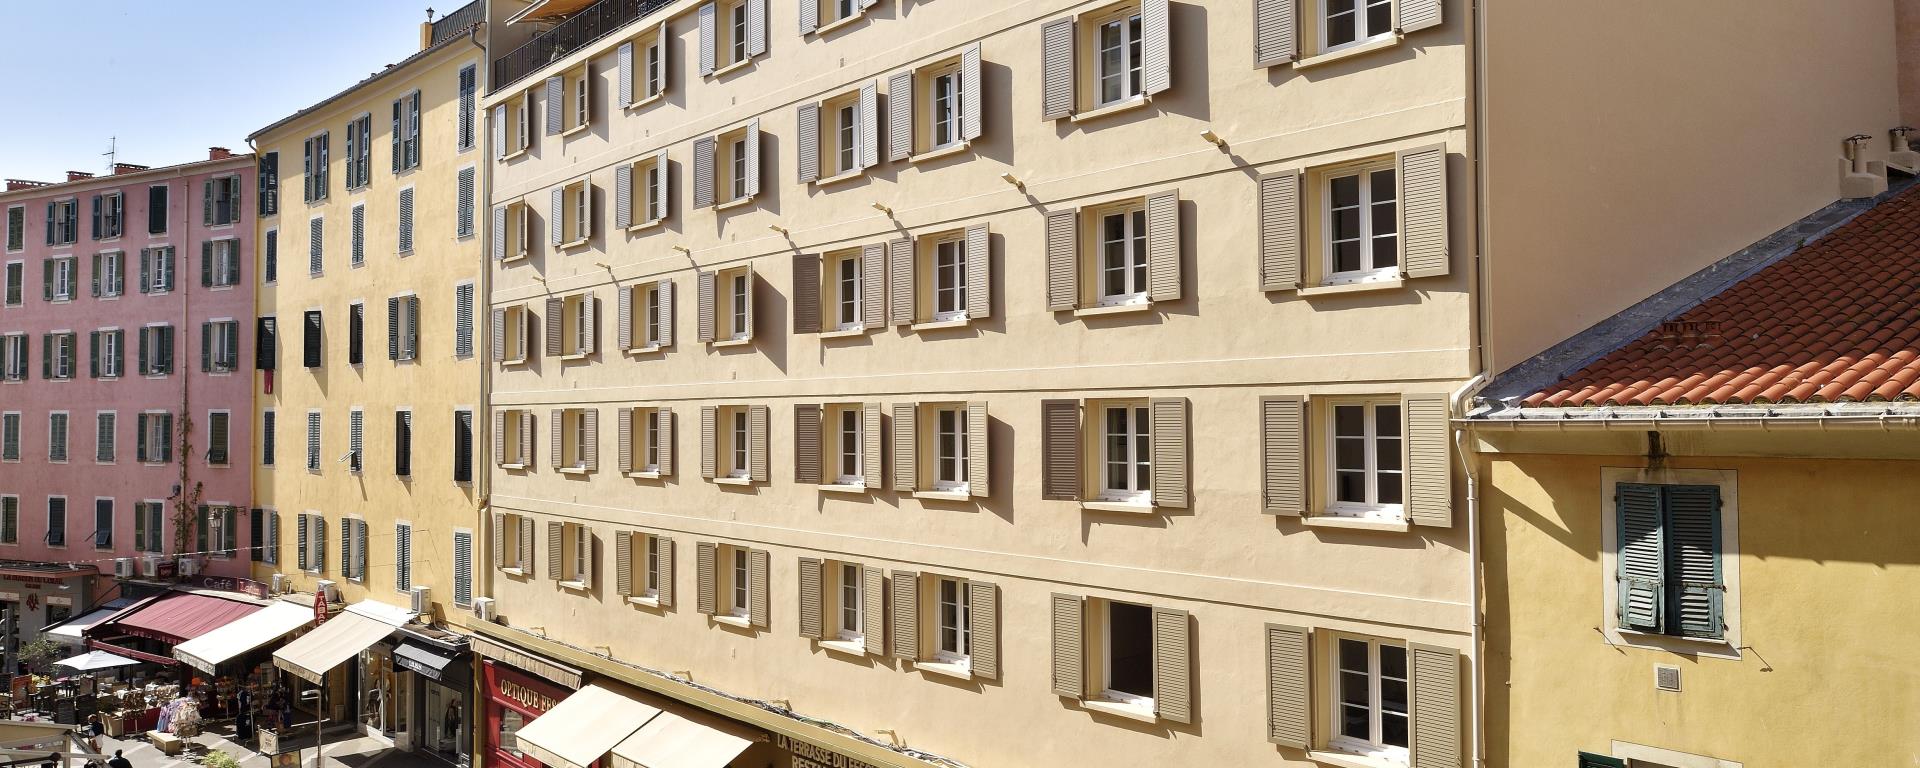 2021- Fesch vue façade  STEF BRAVIN                                           